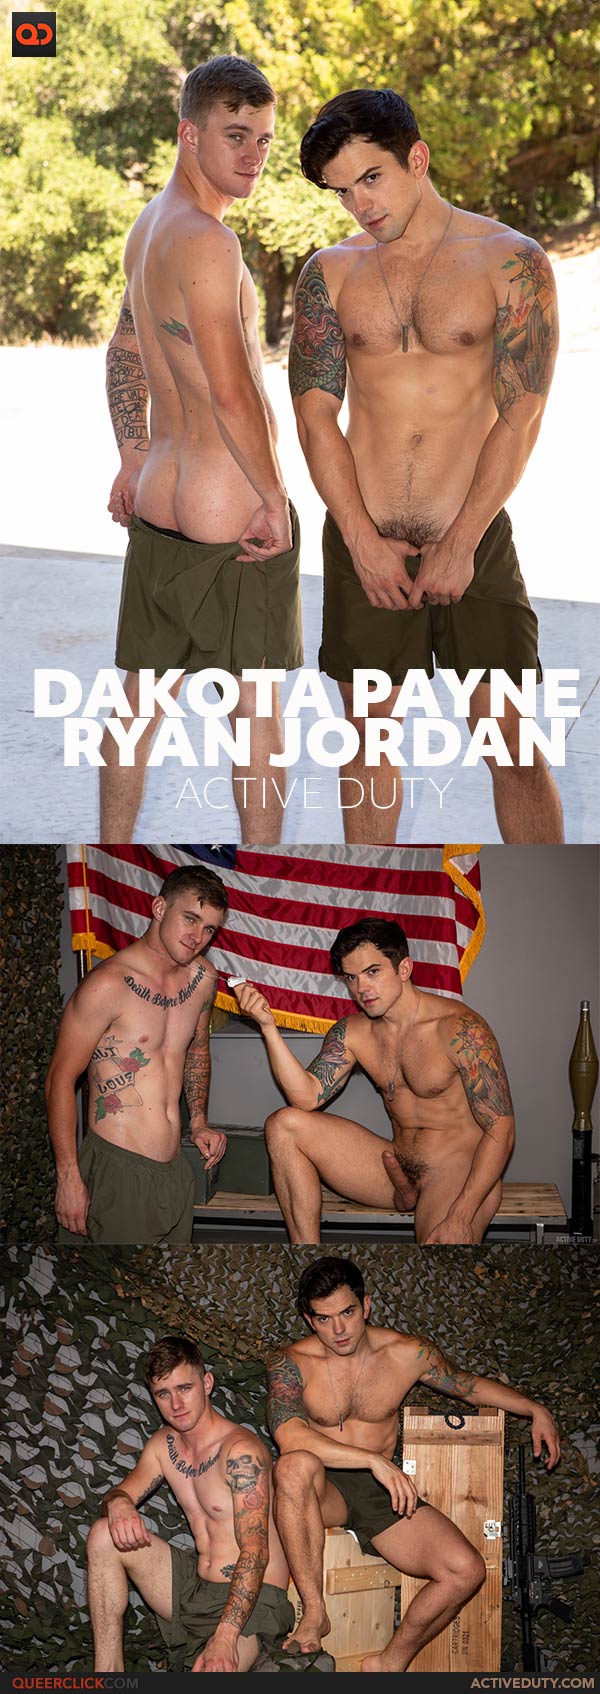 Active Duty: Ryan Jordan and Dakota Payne